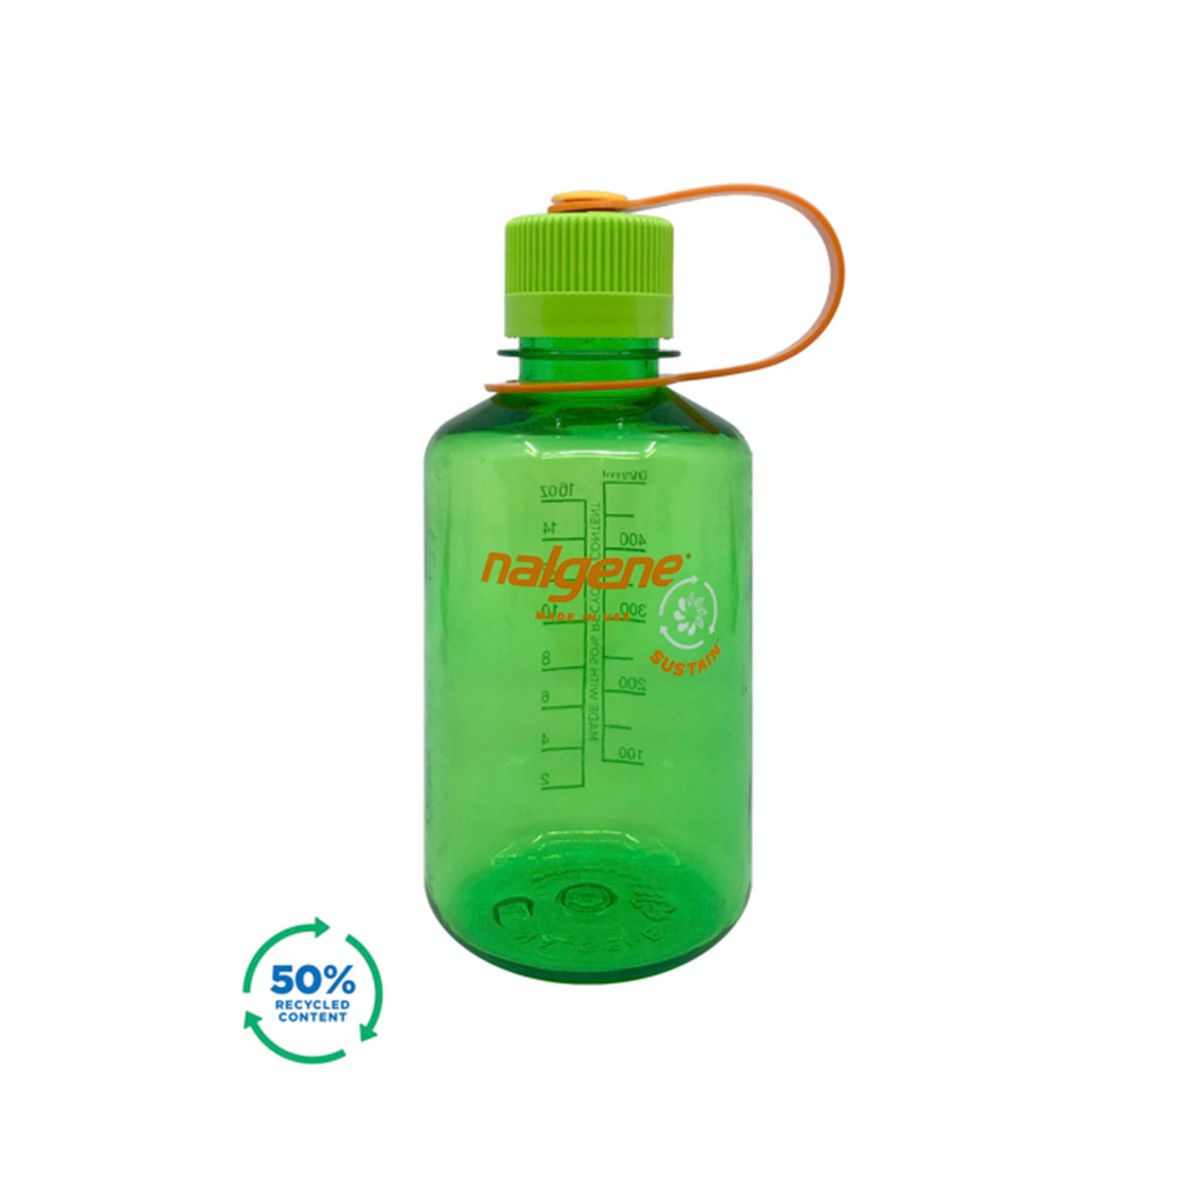 Grønn drikkeflaske i 50% resirkulert materiale. BPA-fr